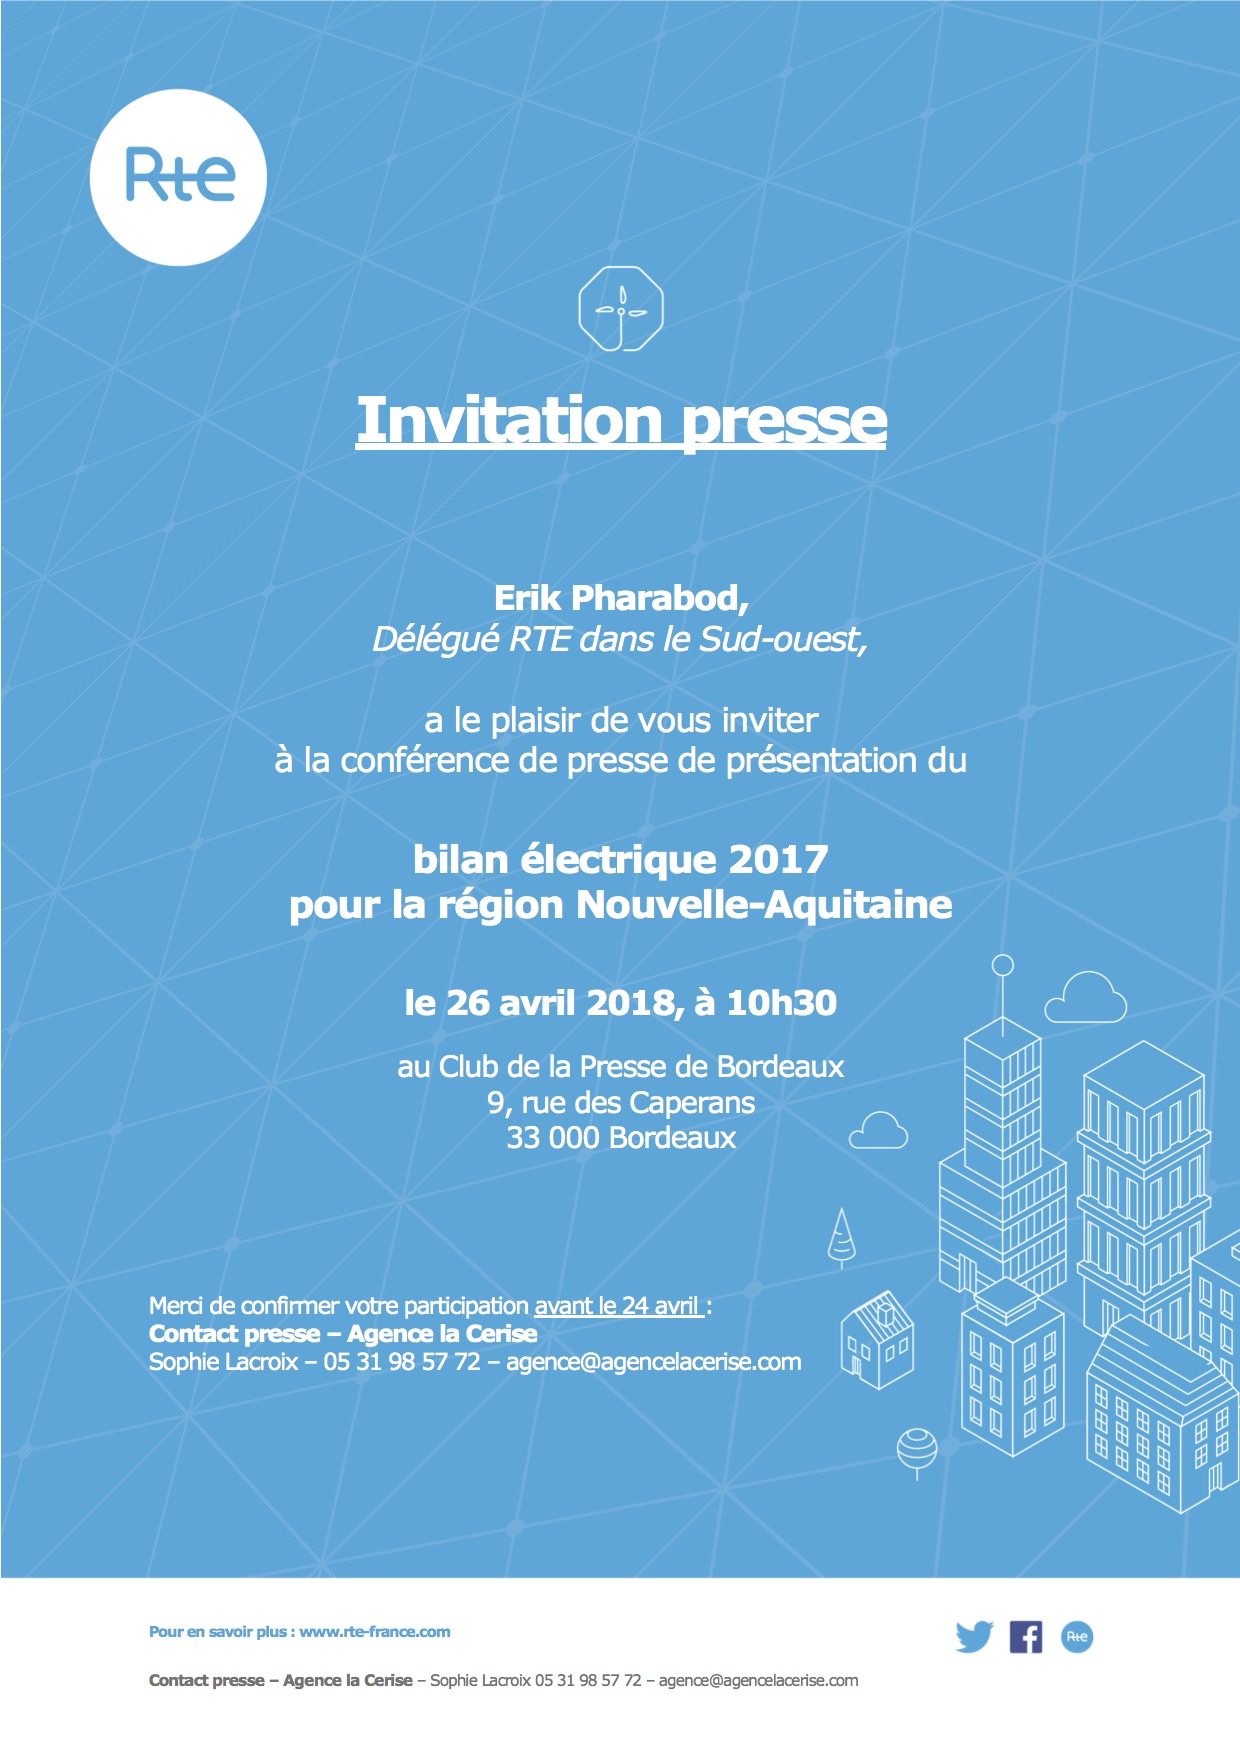 1804-invitation-presse-bilan-electrique-2017-na-rte